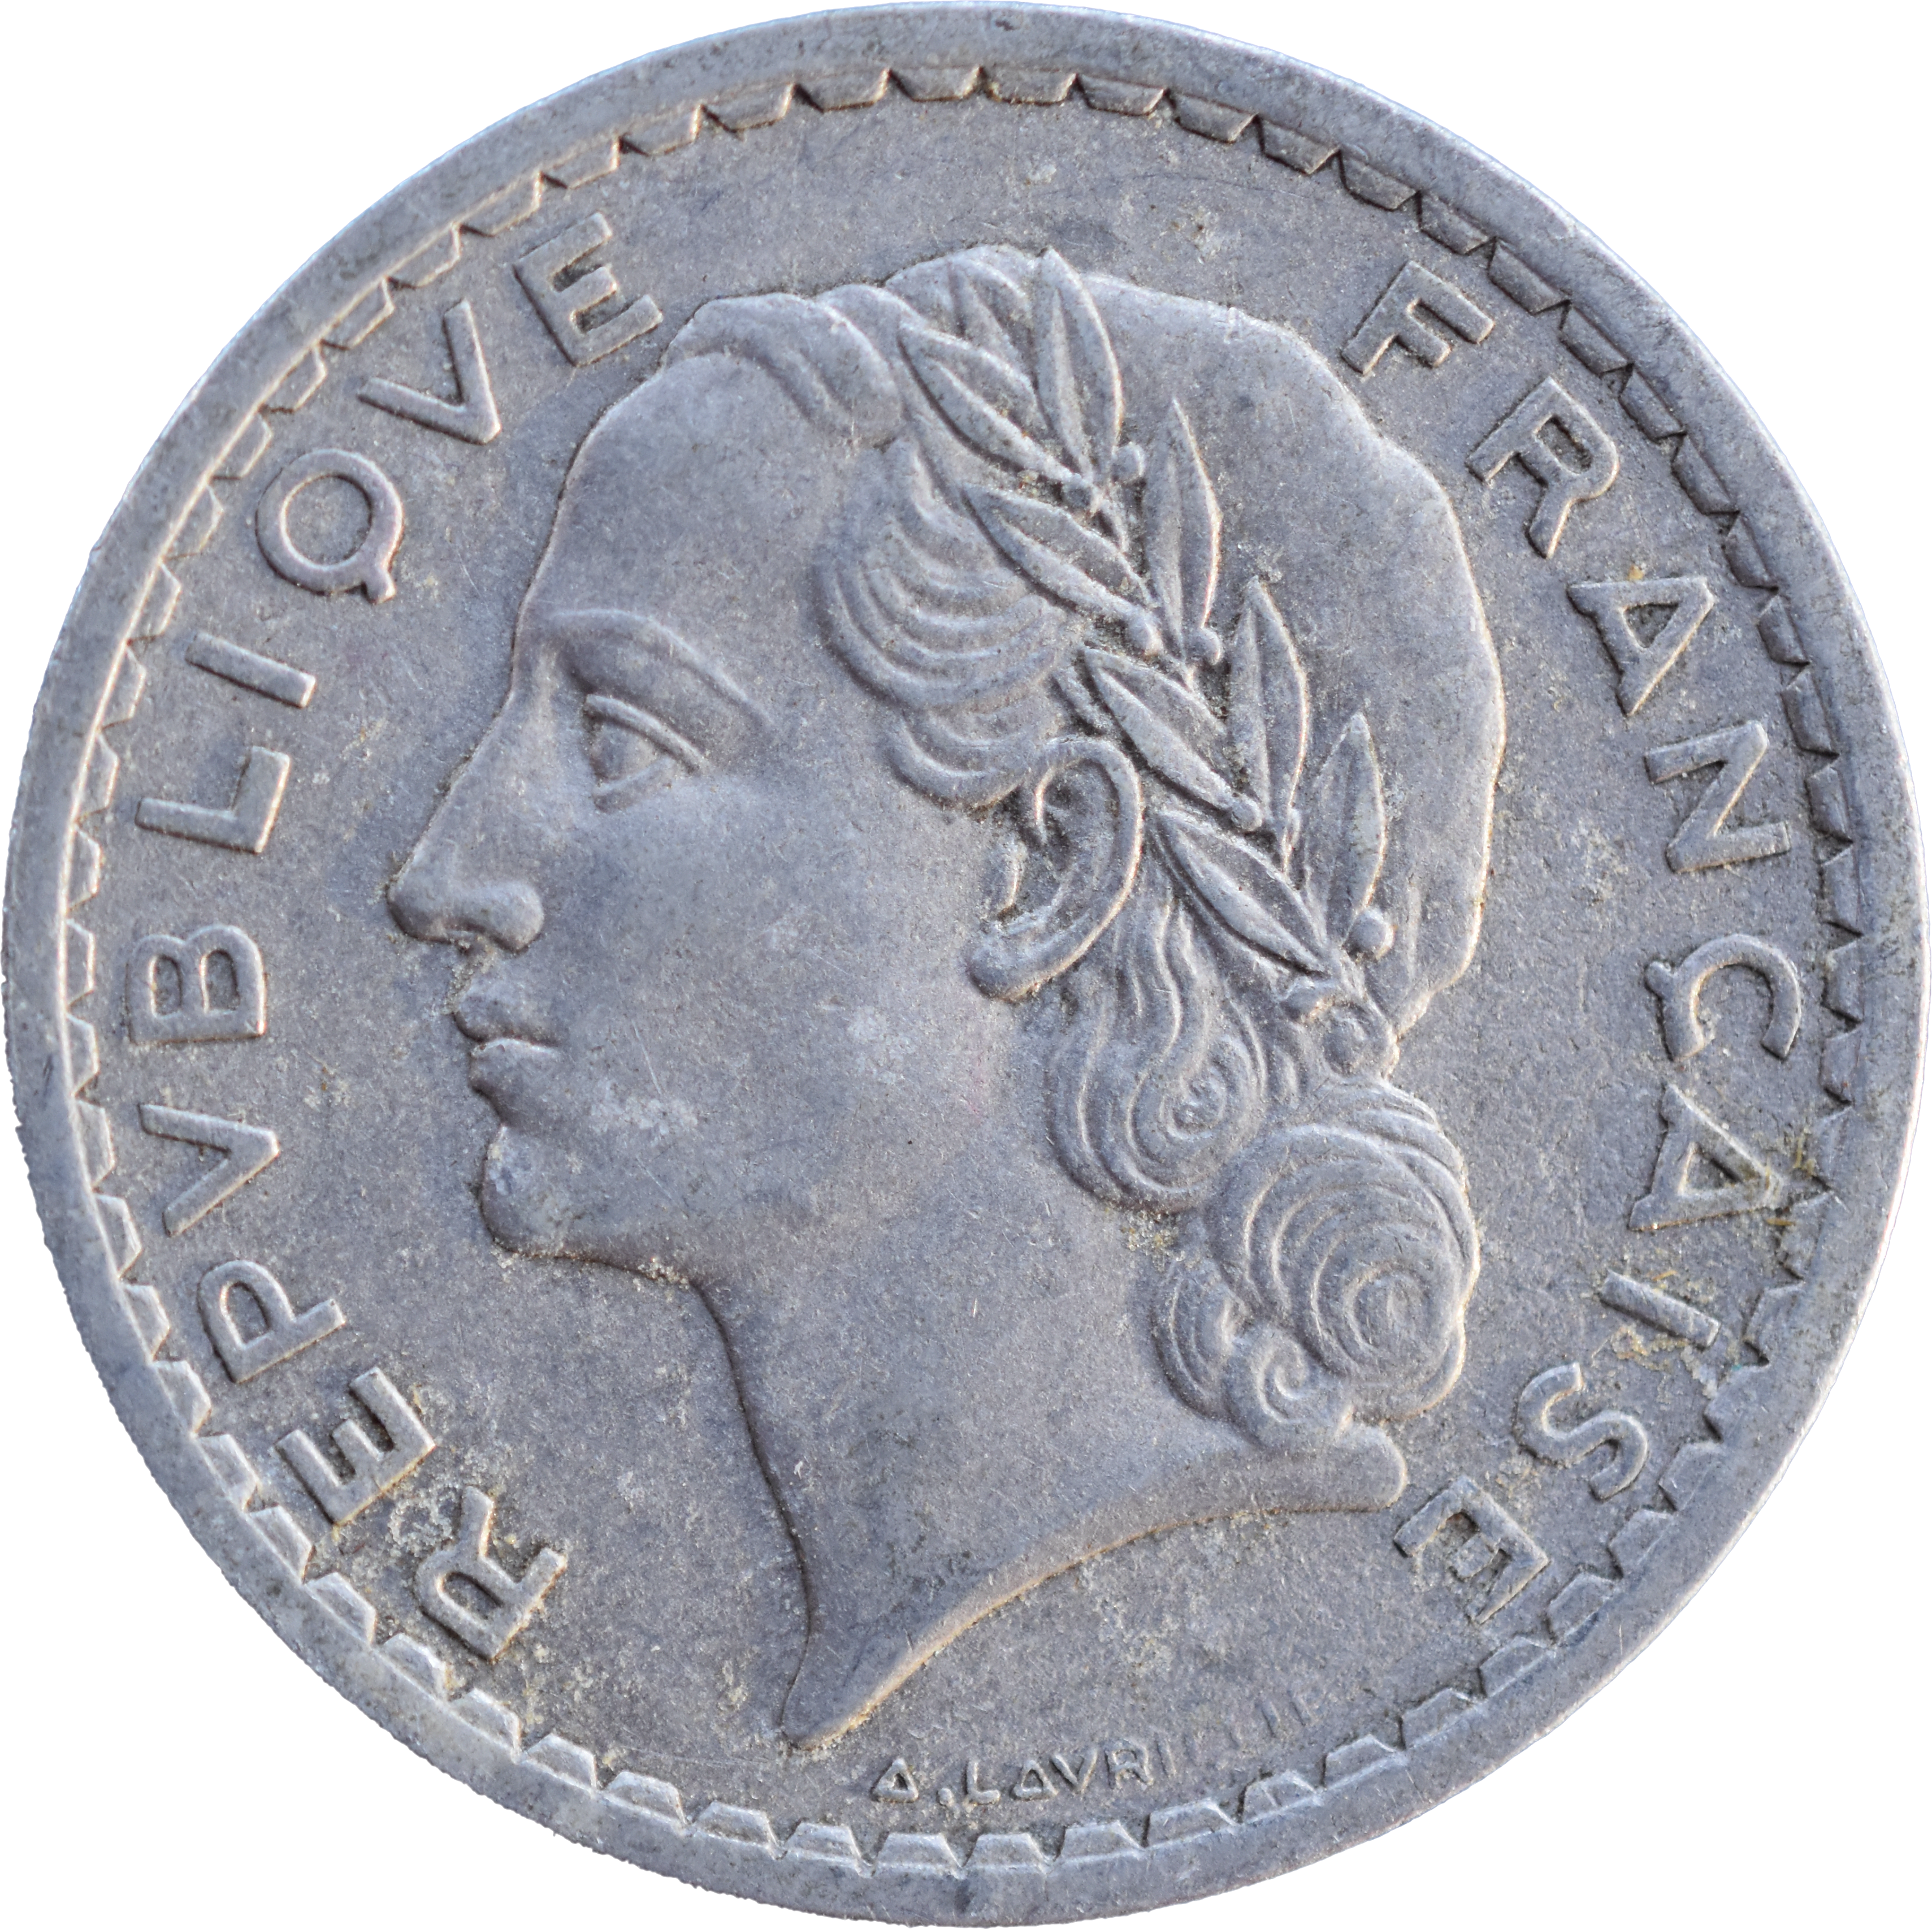 5 francs Lavrillier 1948 SUP aluminium droit